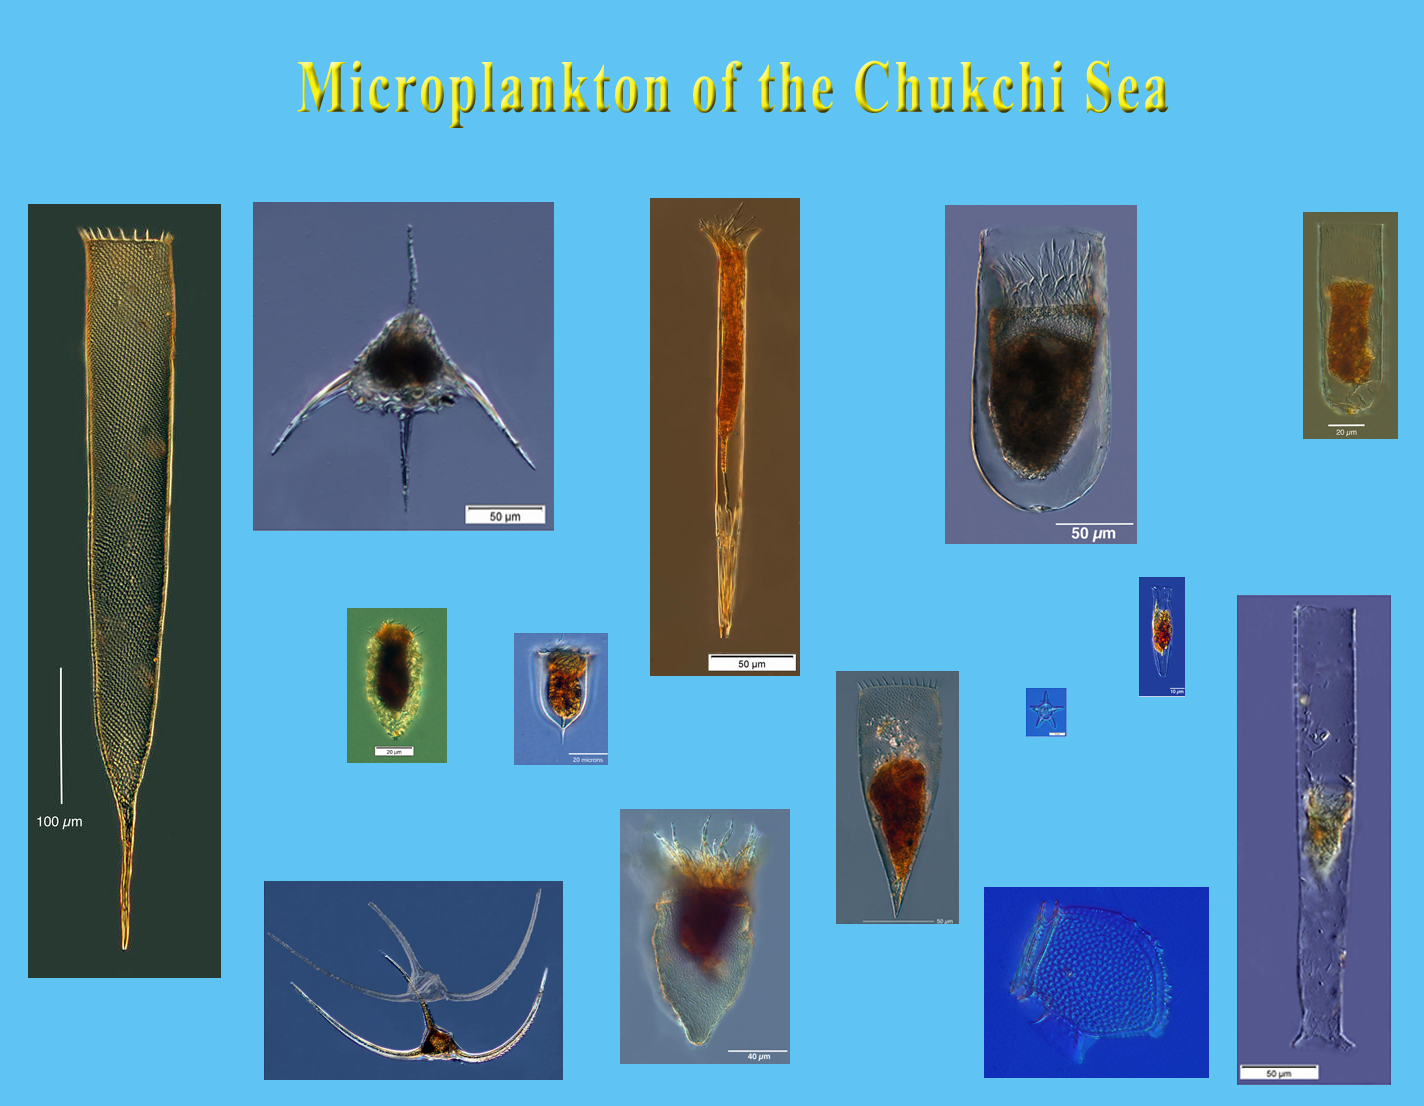 Chukchi Sea Microplankton